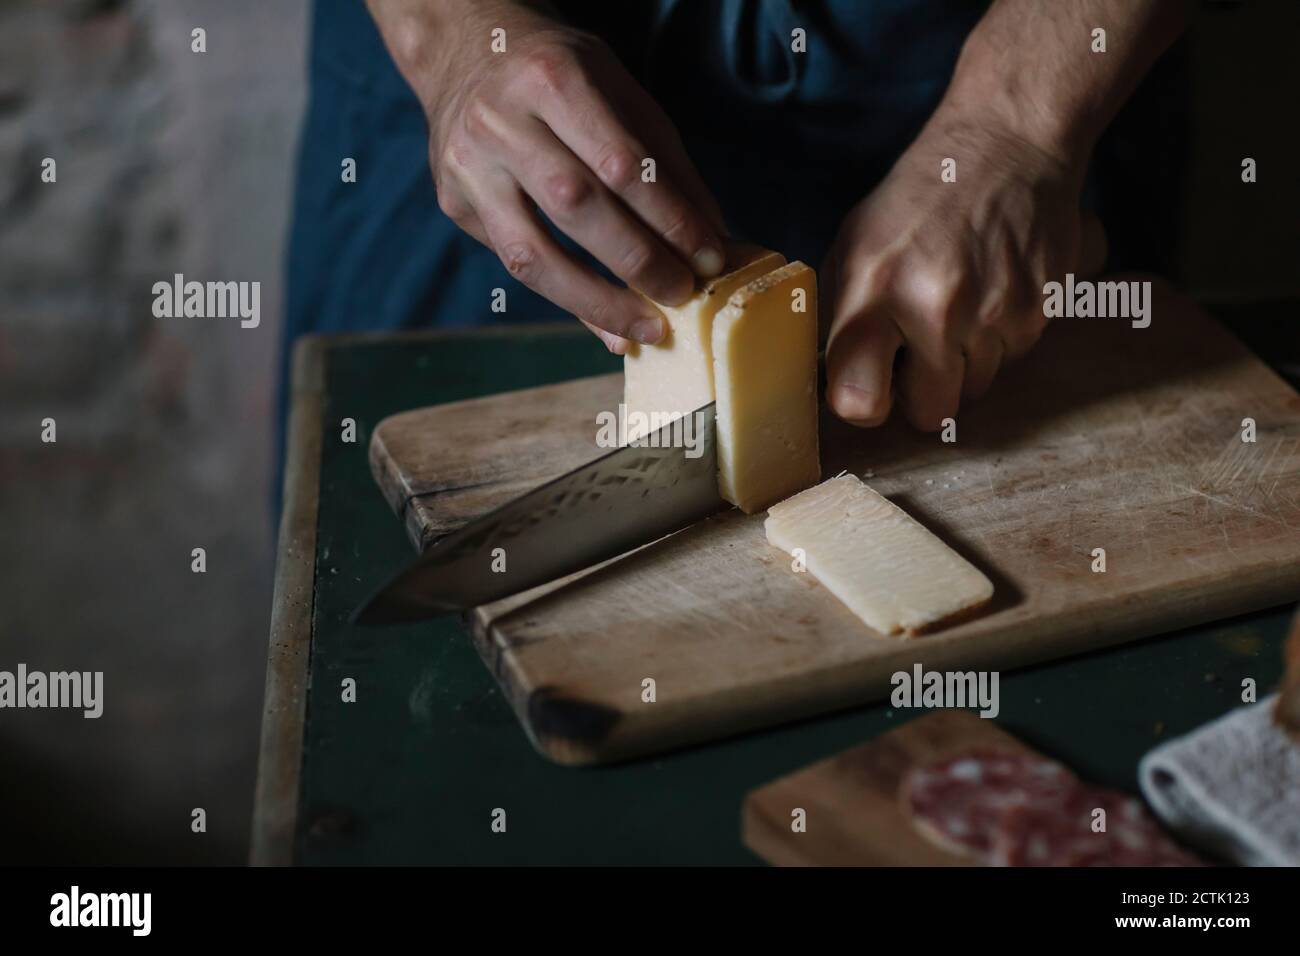 Mains de l'homme coupant des tranches de fromage artisanal à bord à tableau Banque D'Images